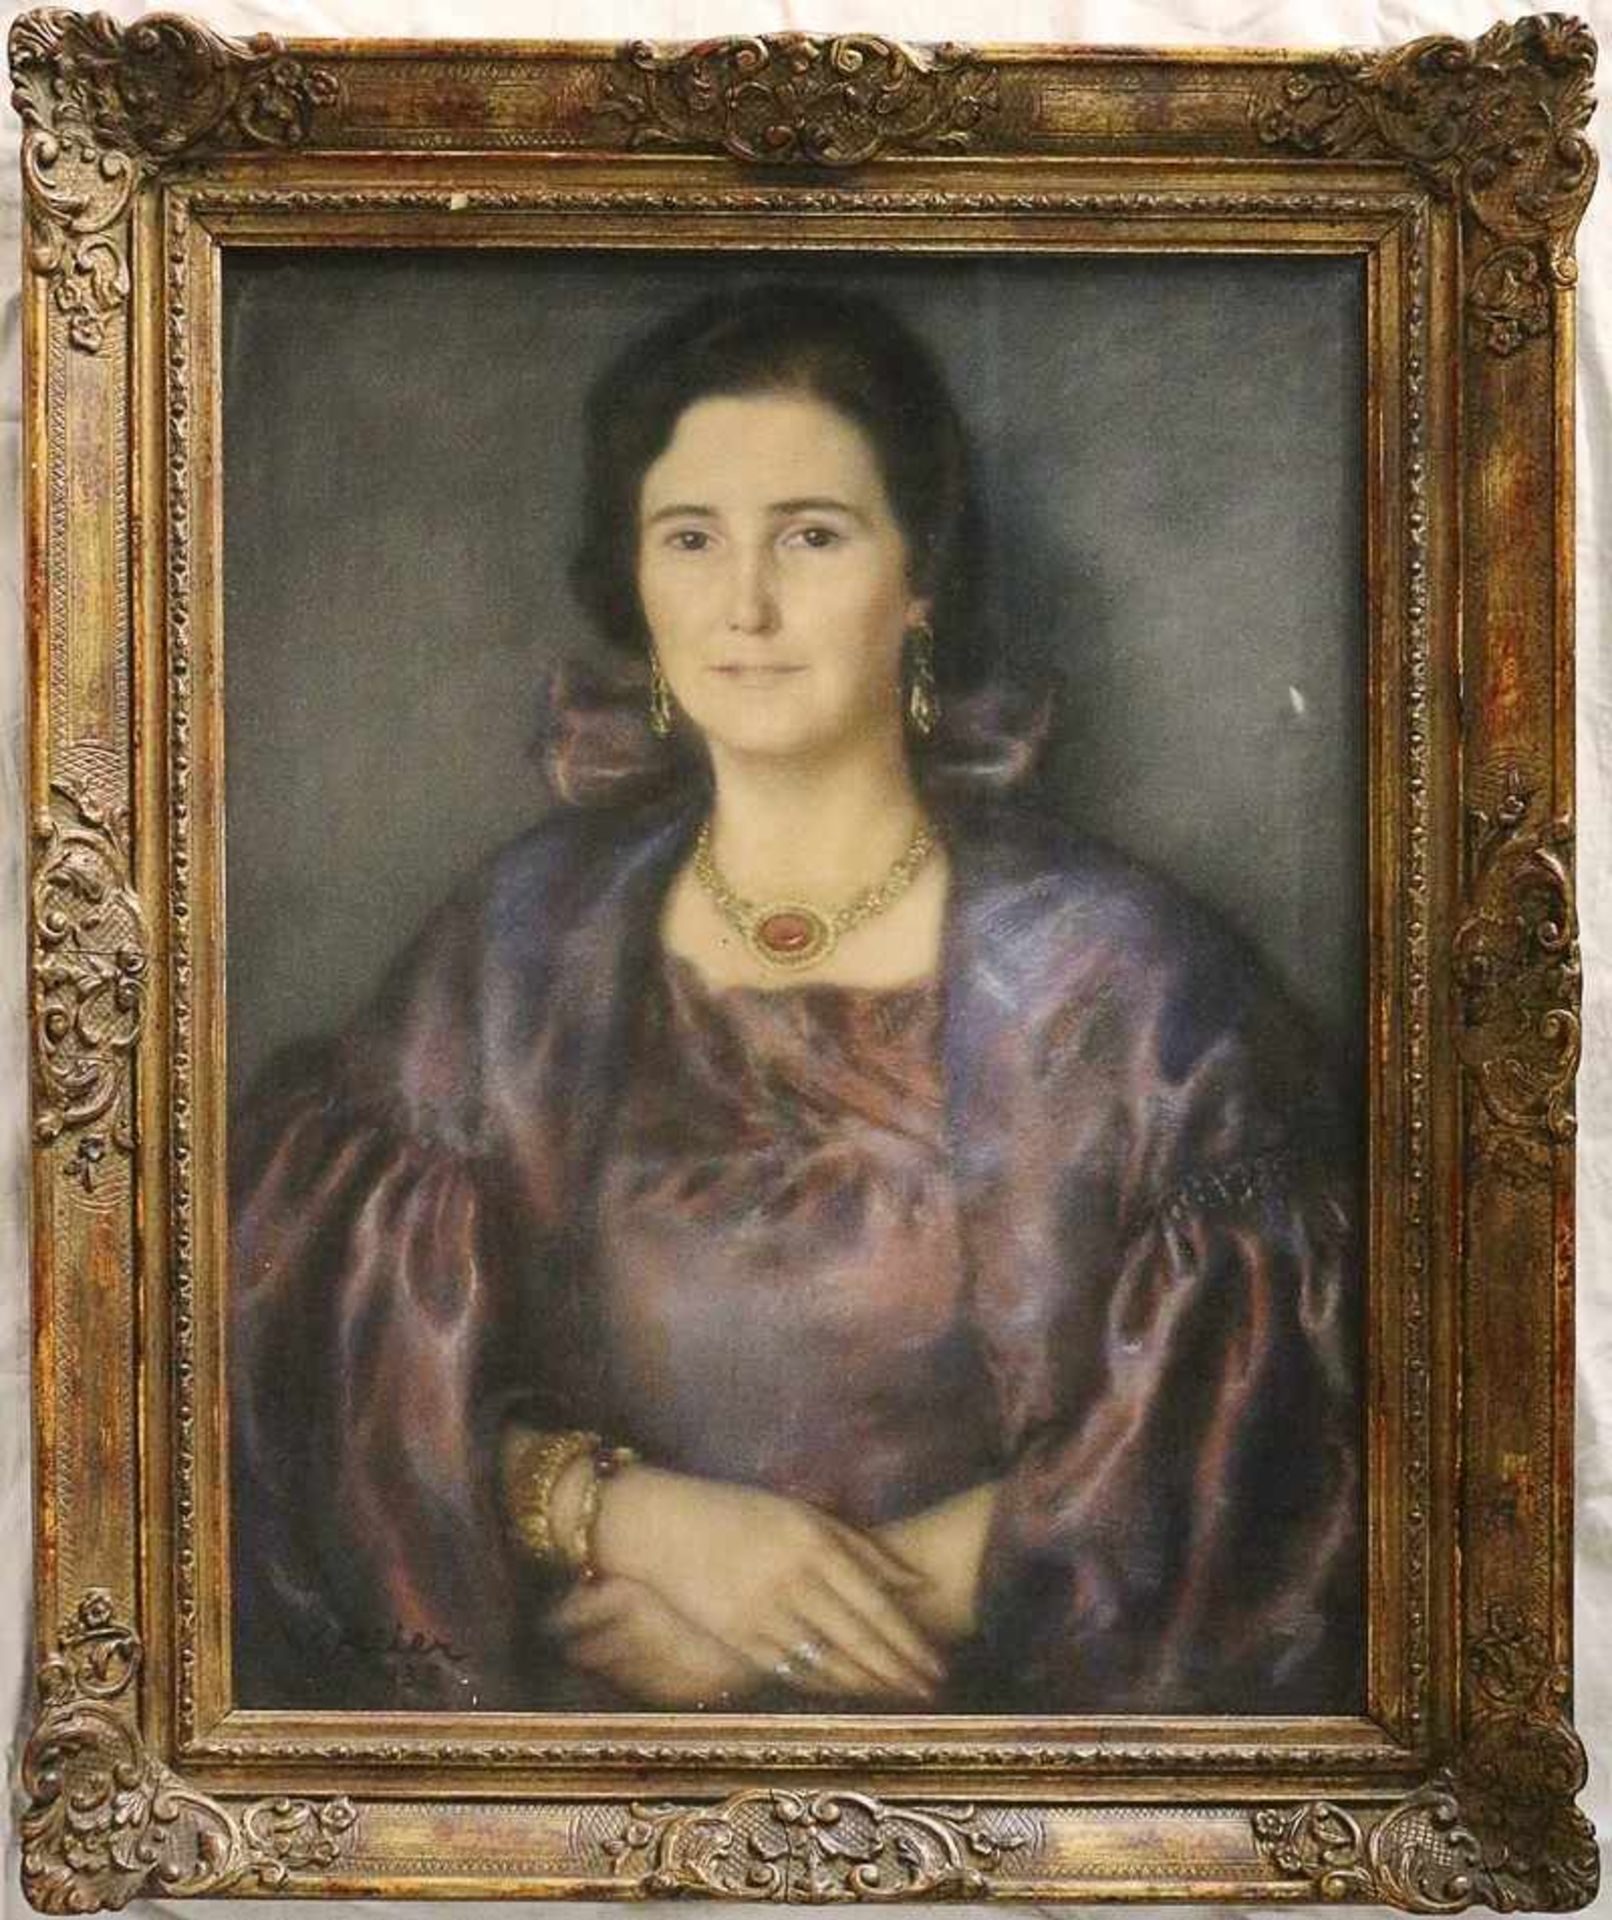 Klier, Wilhelm 1900 Karlsbad - 1948 Chieming, "Damenportrait in violetter Robe", Pastell, gedeckte